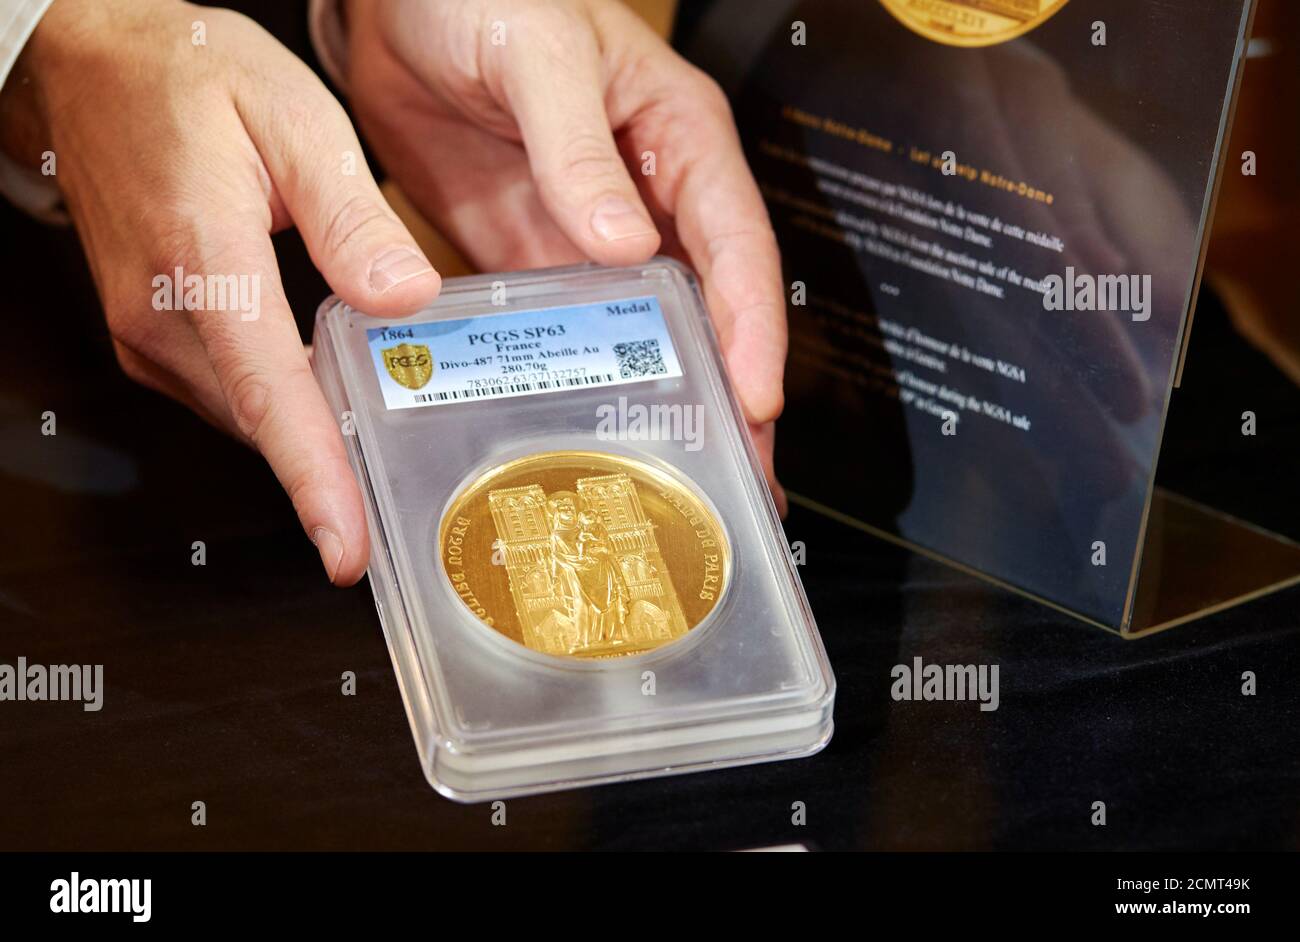 Eine 280g Goldmedaille, die Notre Dame darstellt und bei einer Auktion zum Verkauf kommt, ist während einer Vorschau auf der Numismatica Genevensis in Genf, Schweiz, 18. November 2019 abgebildet. REUTERS/Denis Balibouse Stockfoto